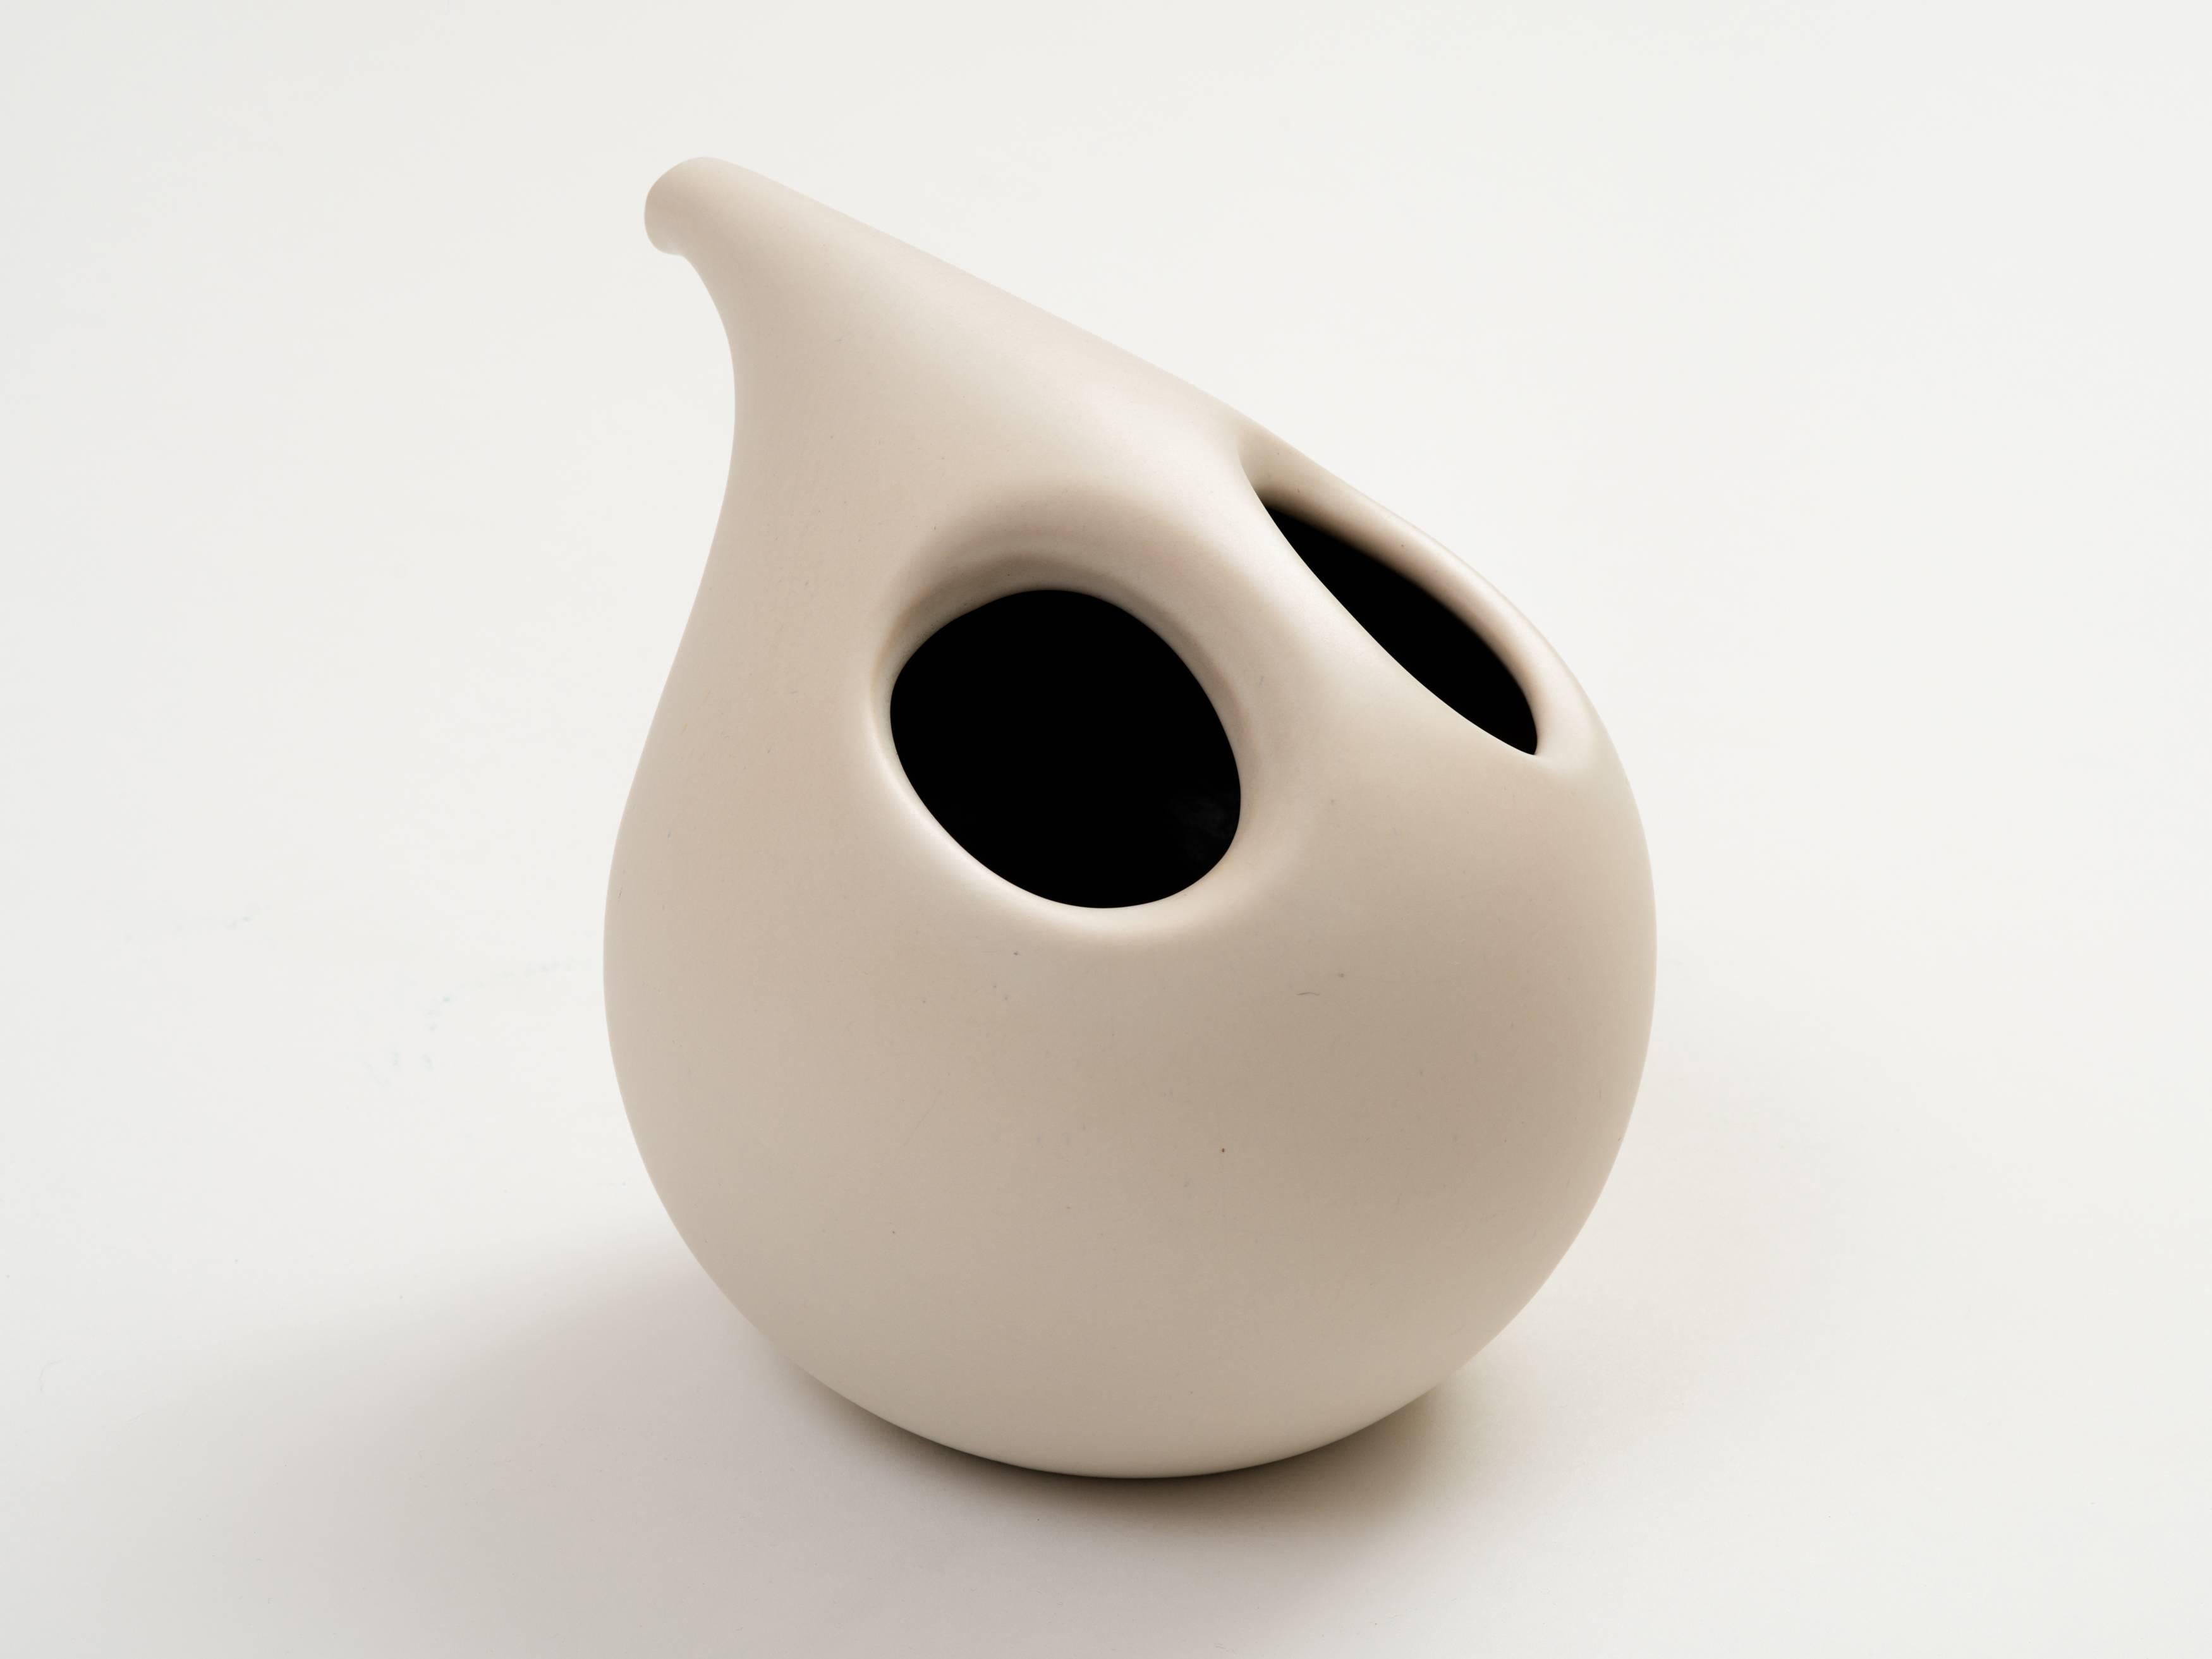 Eine faszinierende Keramikvase aus Guss, die einem Krug oder einer Karaffe ähnelt, mit einem falschen Ausguss und zwei Öffnungen an der Spitze, die einen Henkel bilden. Ein so gefälliges und wohlproportioniertes modernistisches Design, ausgeführt in